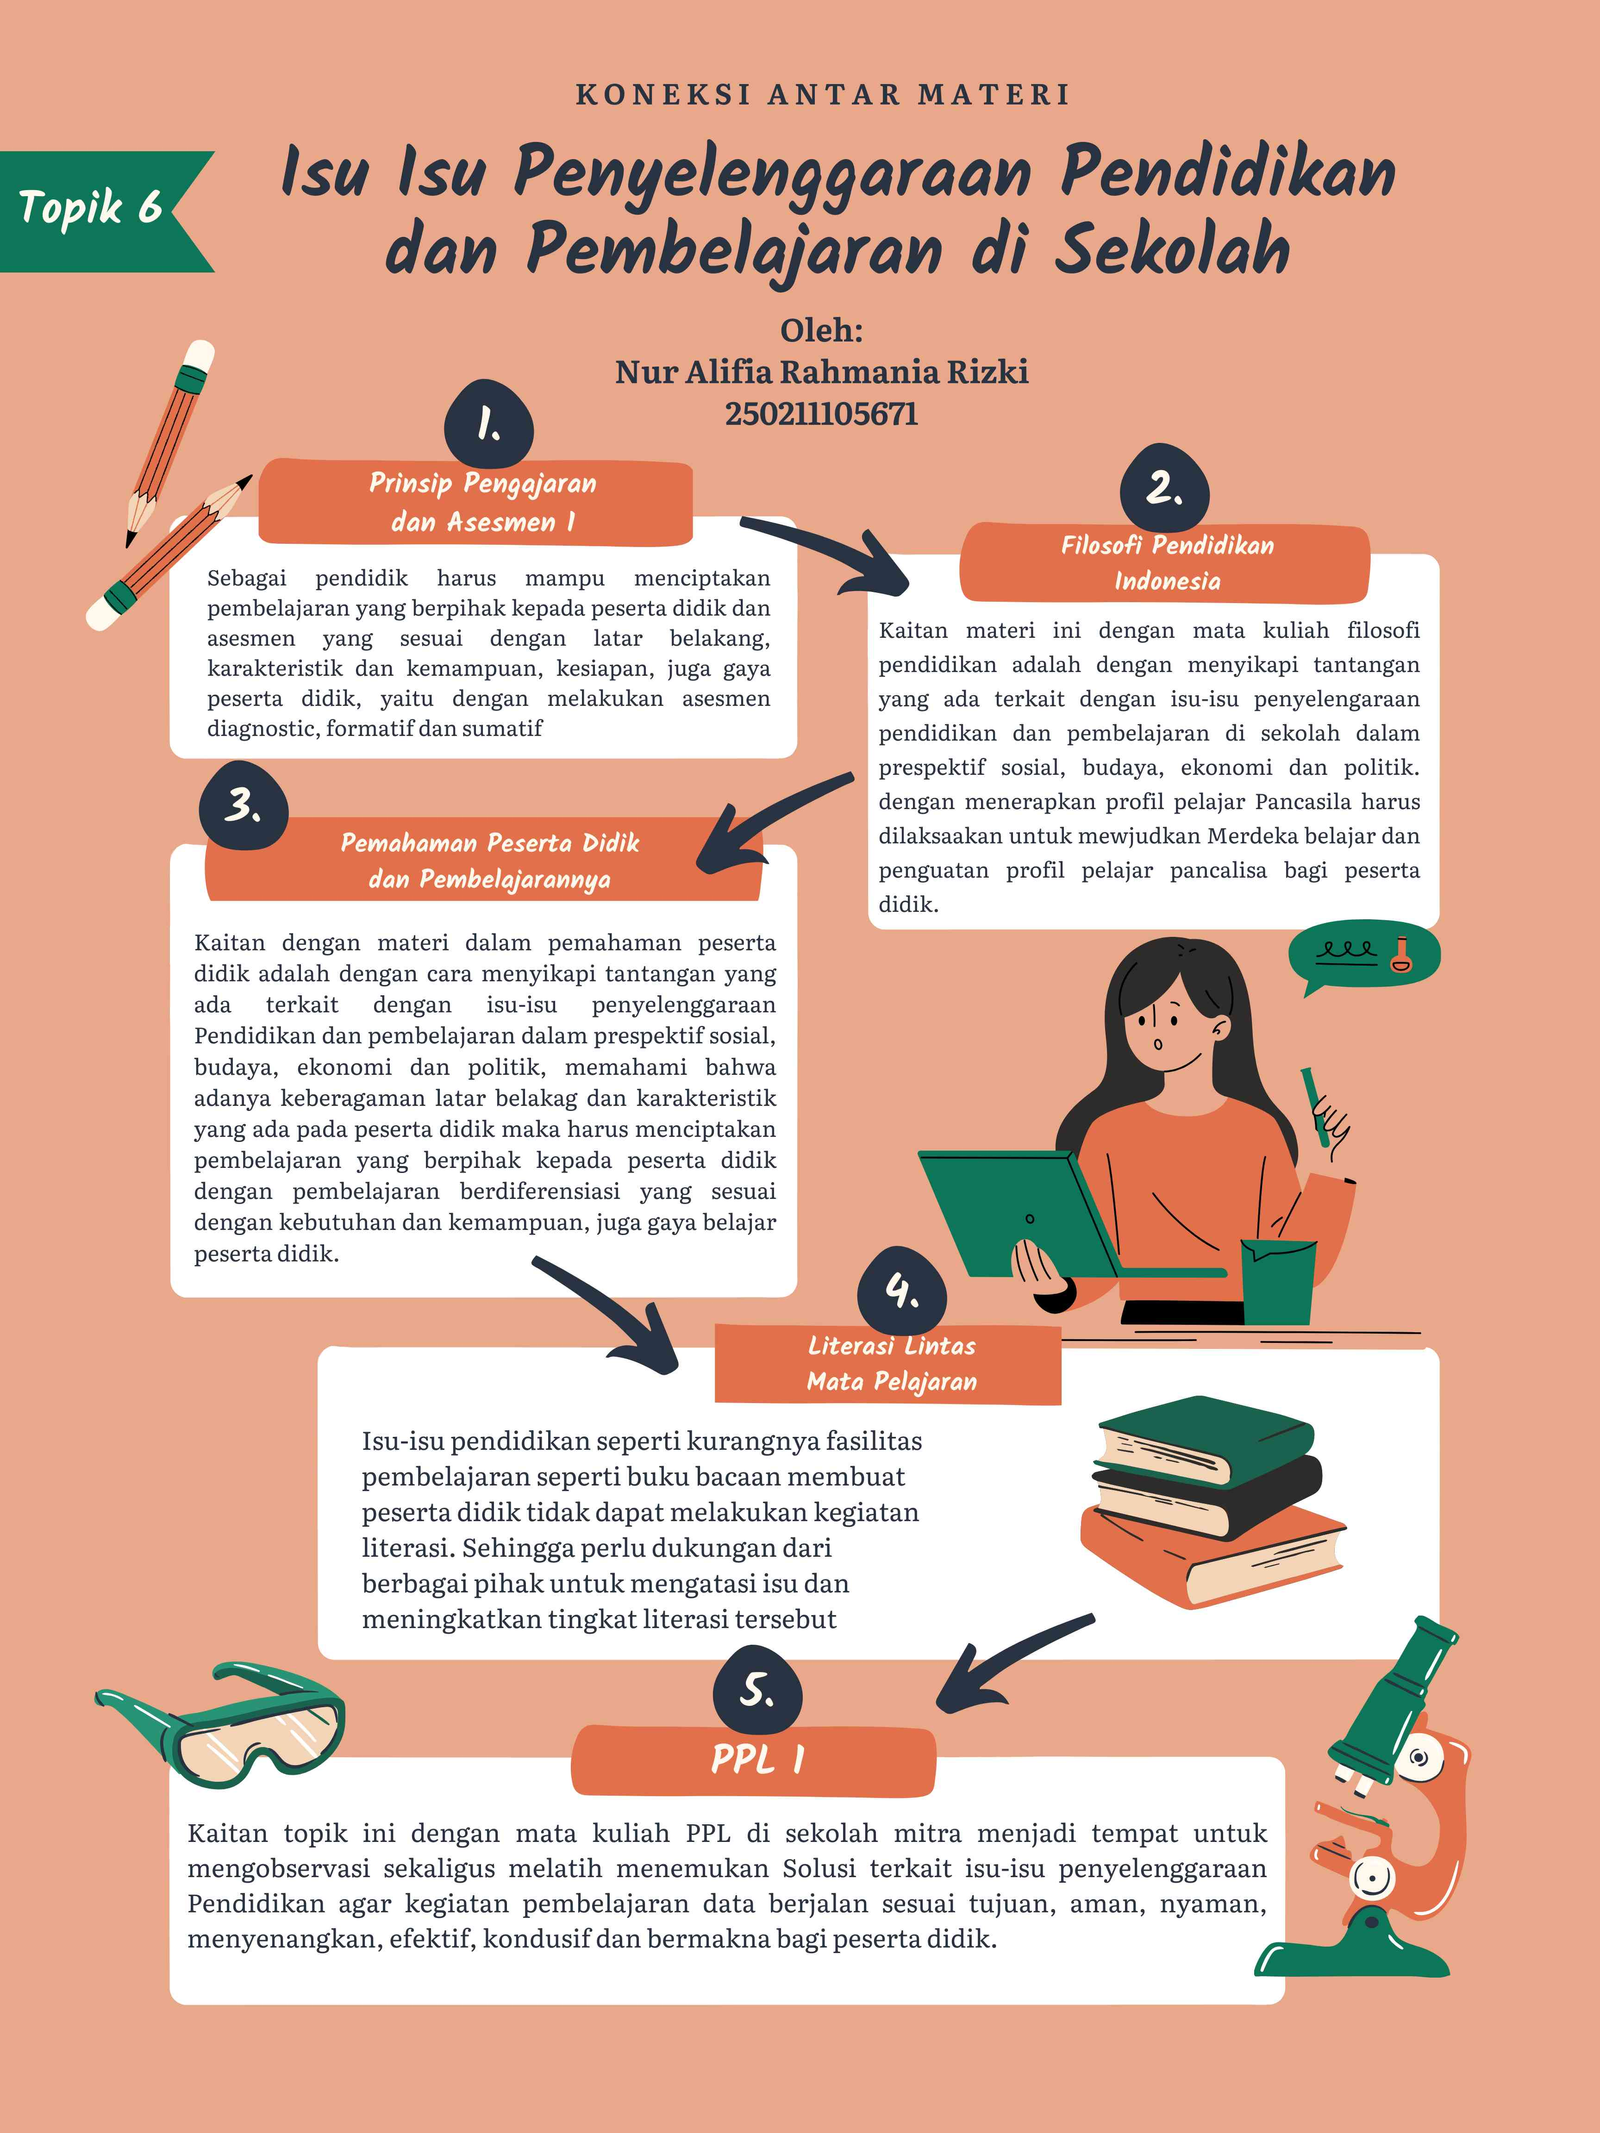 Perspektif Sosiokultural dalam Pendidikan Indonesia (Aksi Nyata